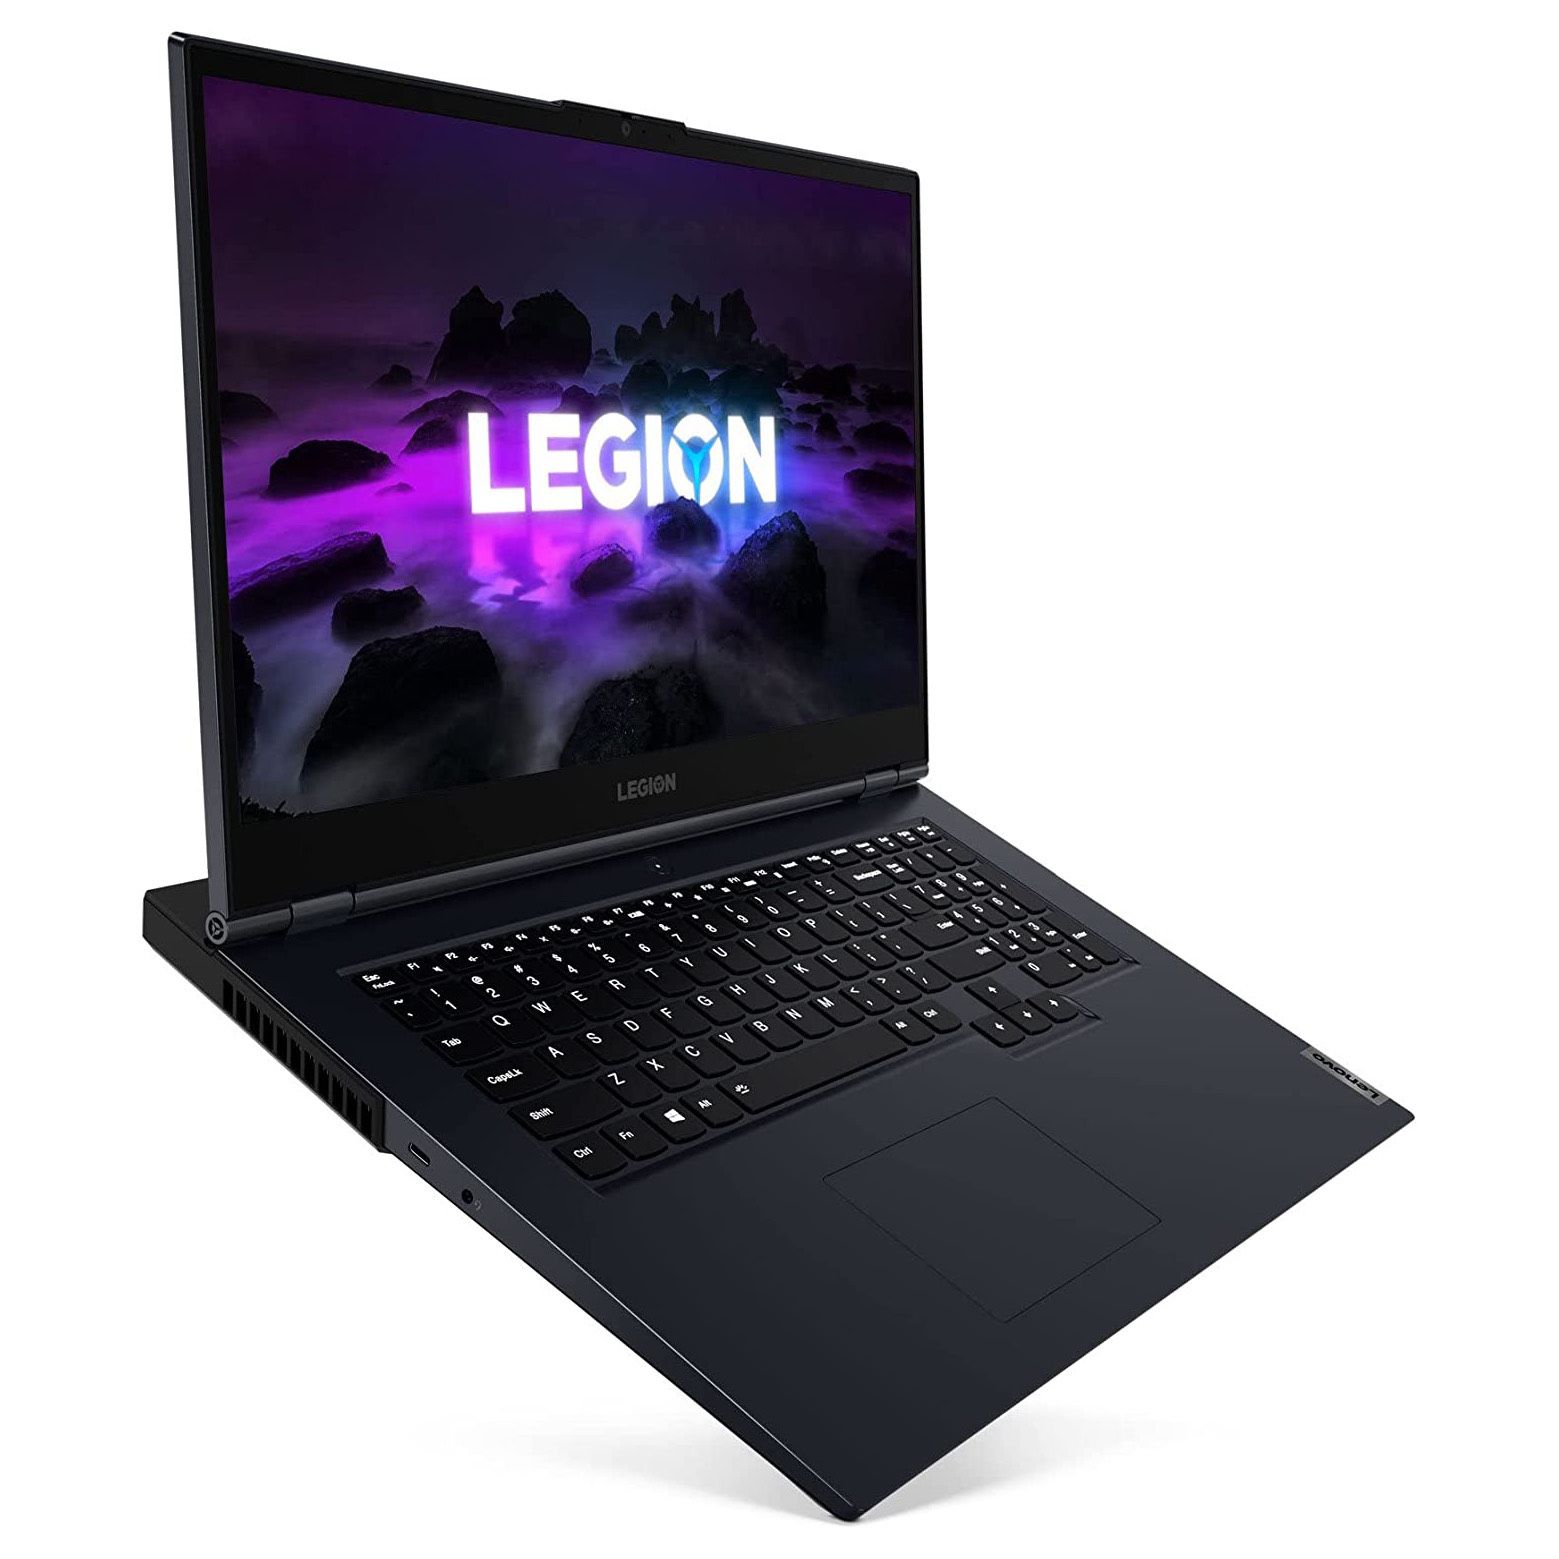 Lenovo Legion 5 Laptop, 17.3" FHD, i7-10750H, 16GB, 256G SSD, 1TB HDD